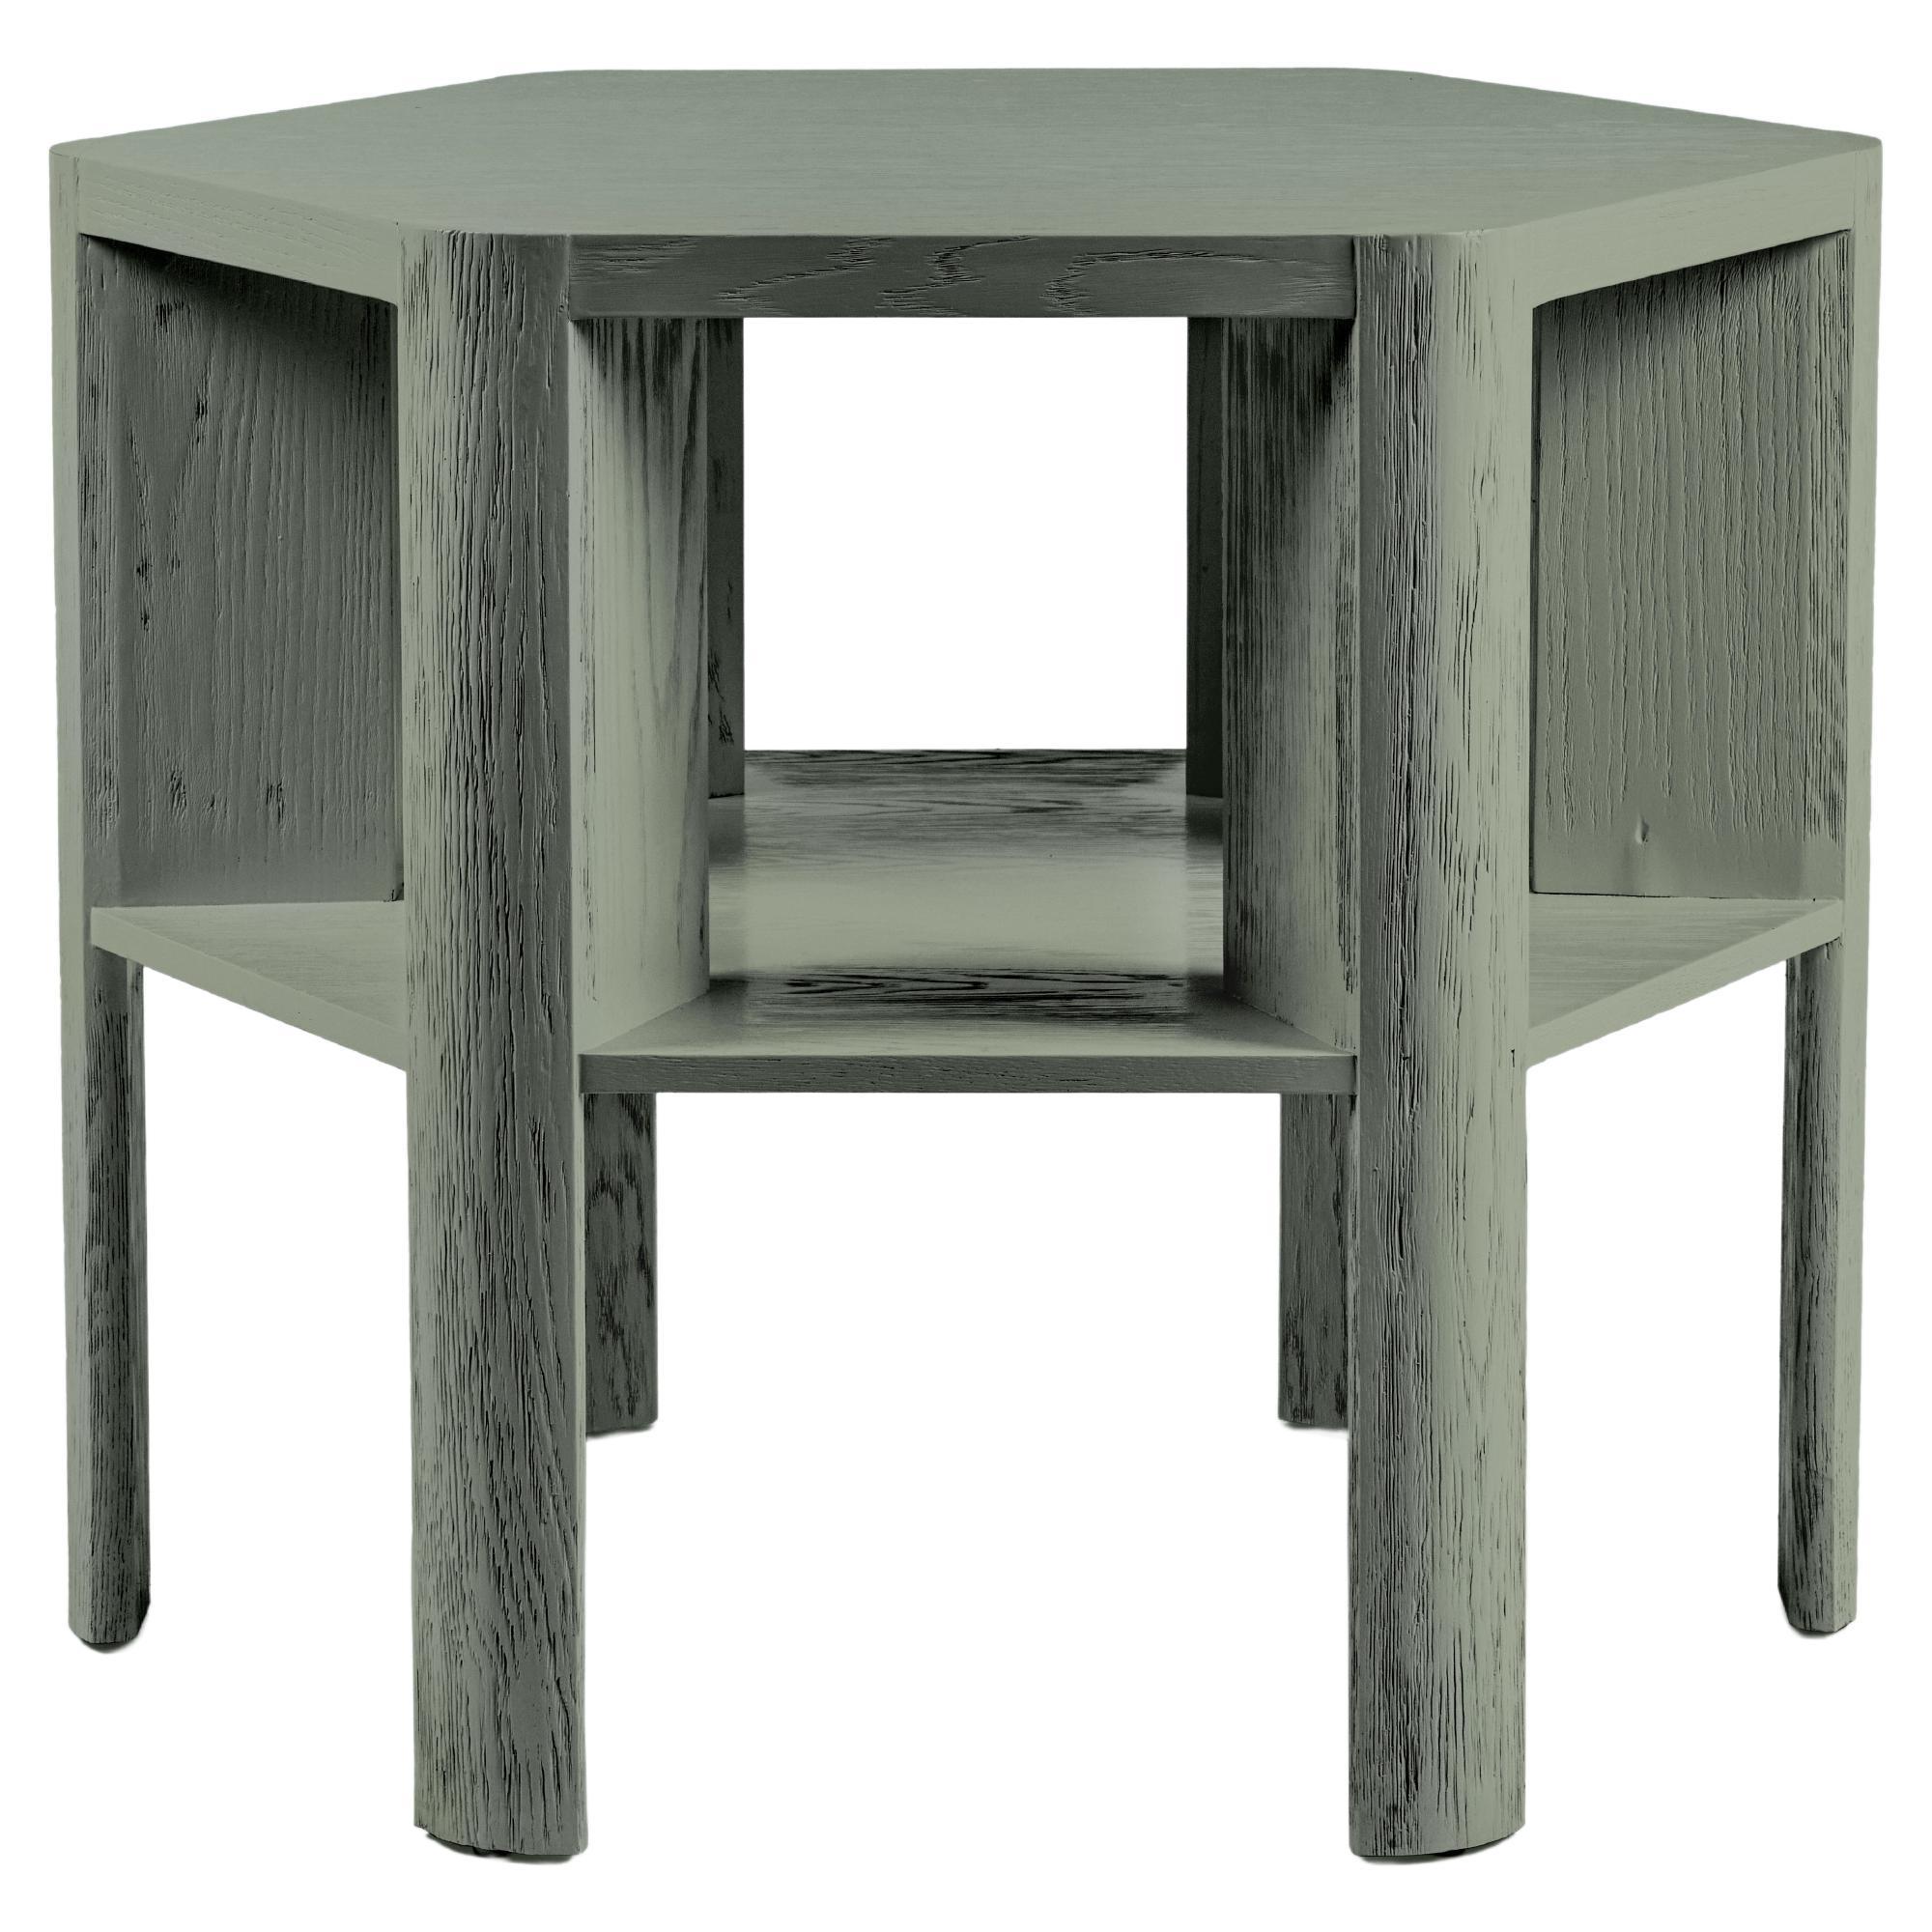 Table de bibliothèque laquée moderne et minimaliste montrée à Lichen sur chêne